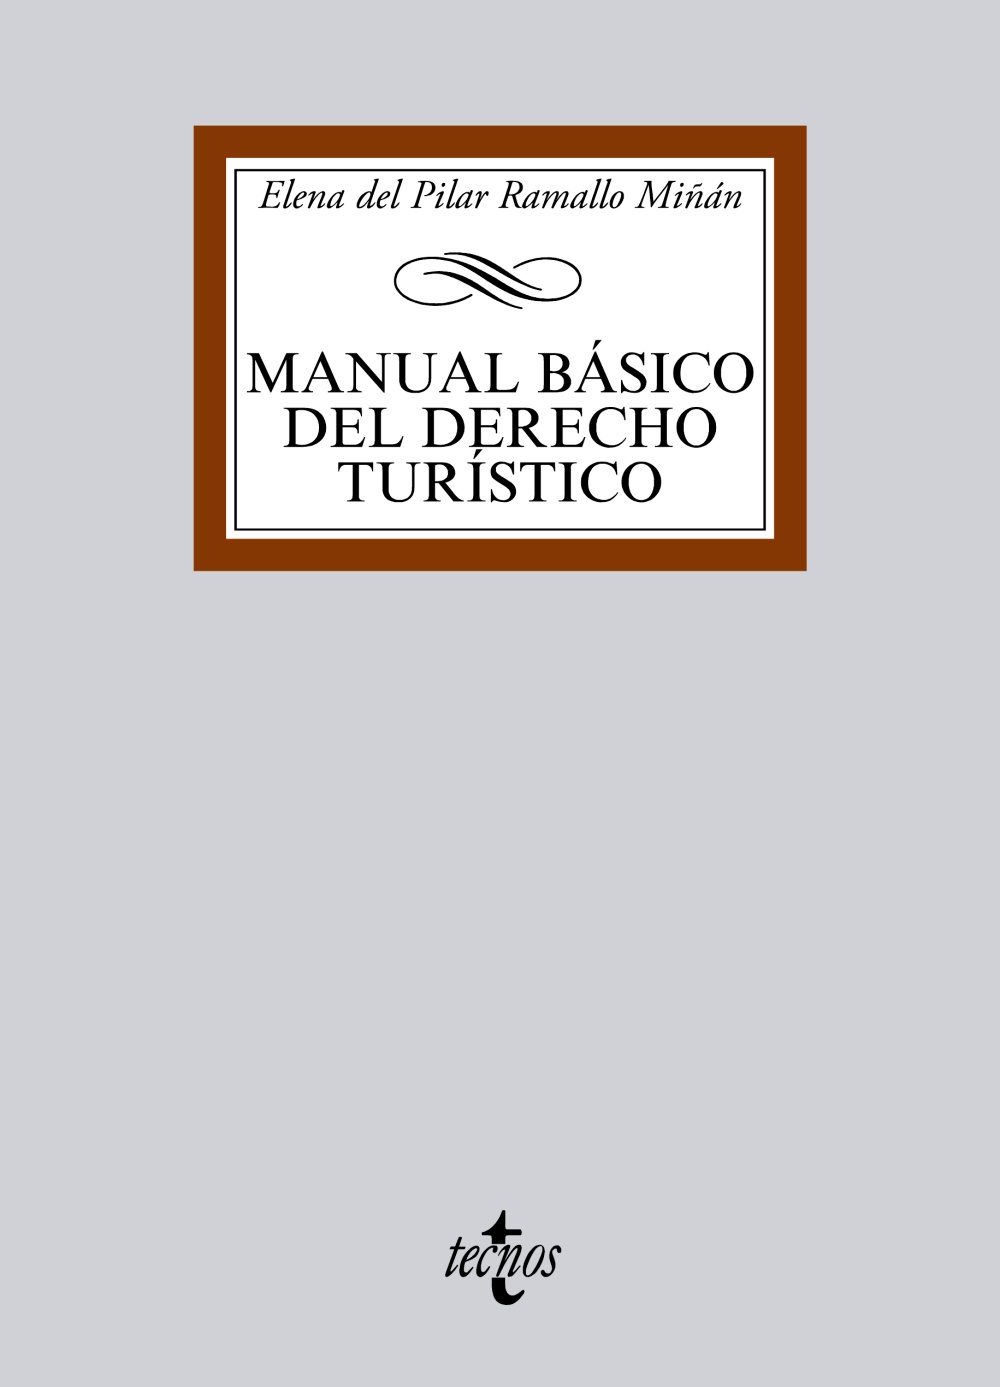 Manual básico del Derecho turístico